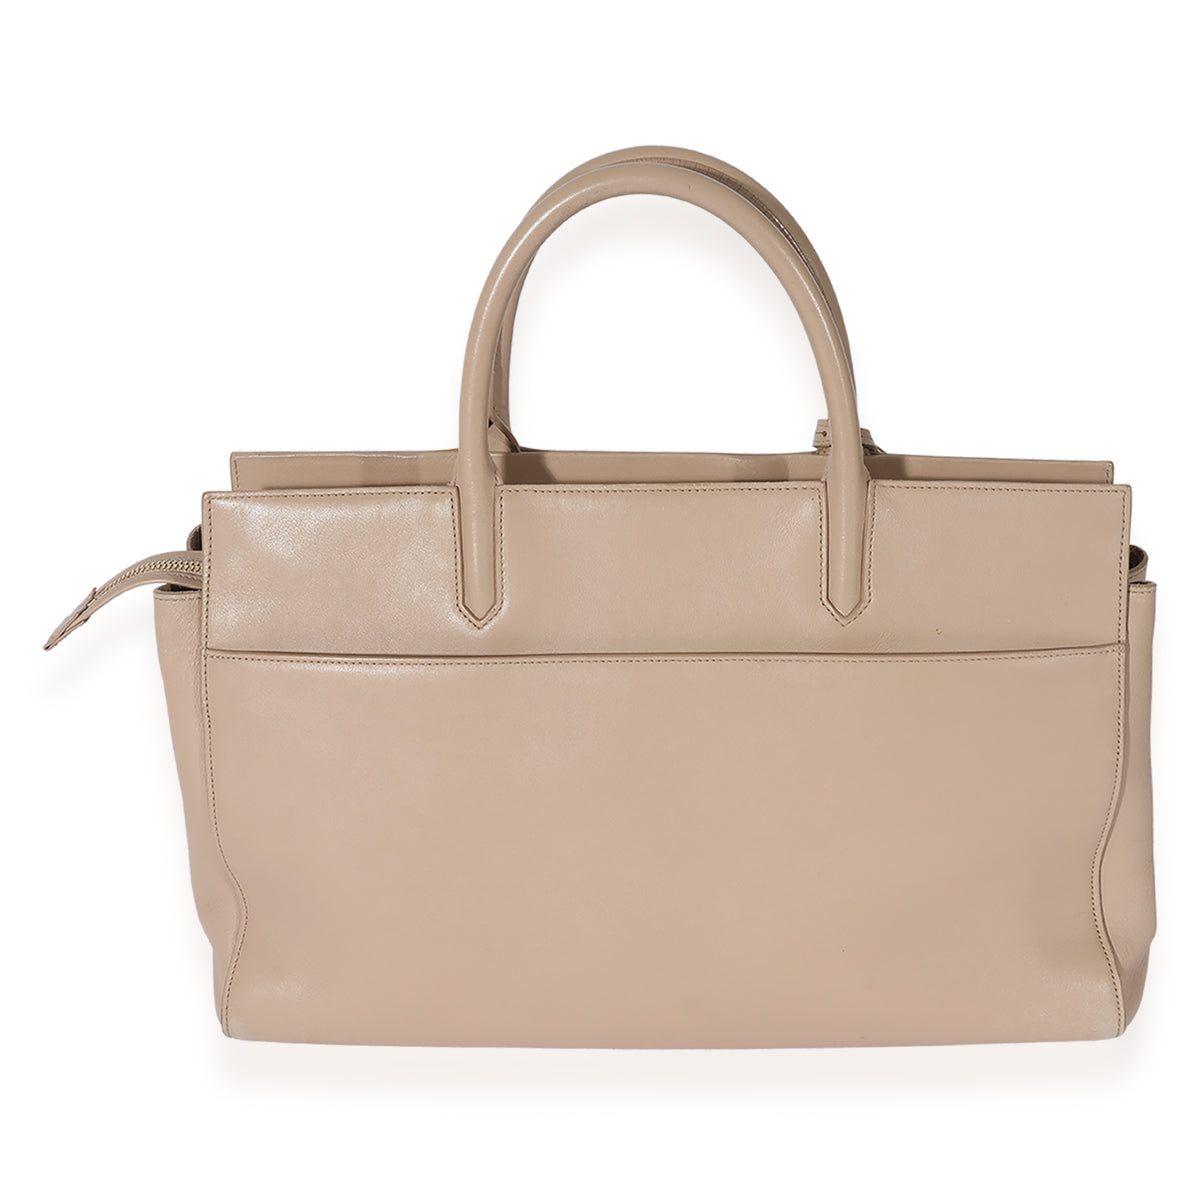 YSL Cabas medium handbag review! 